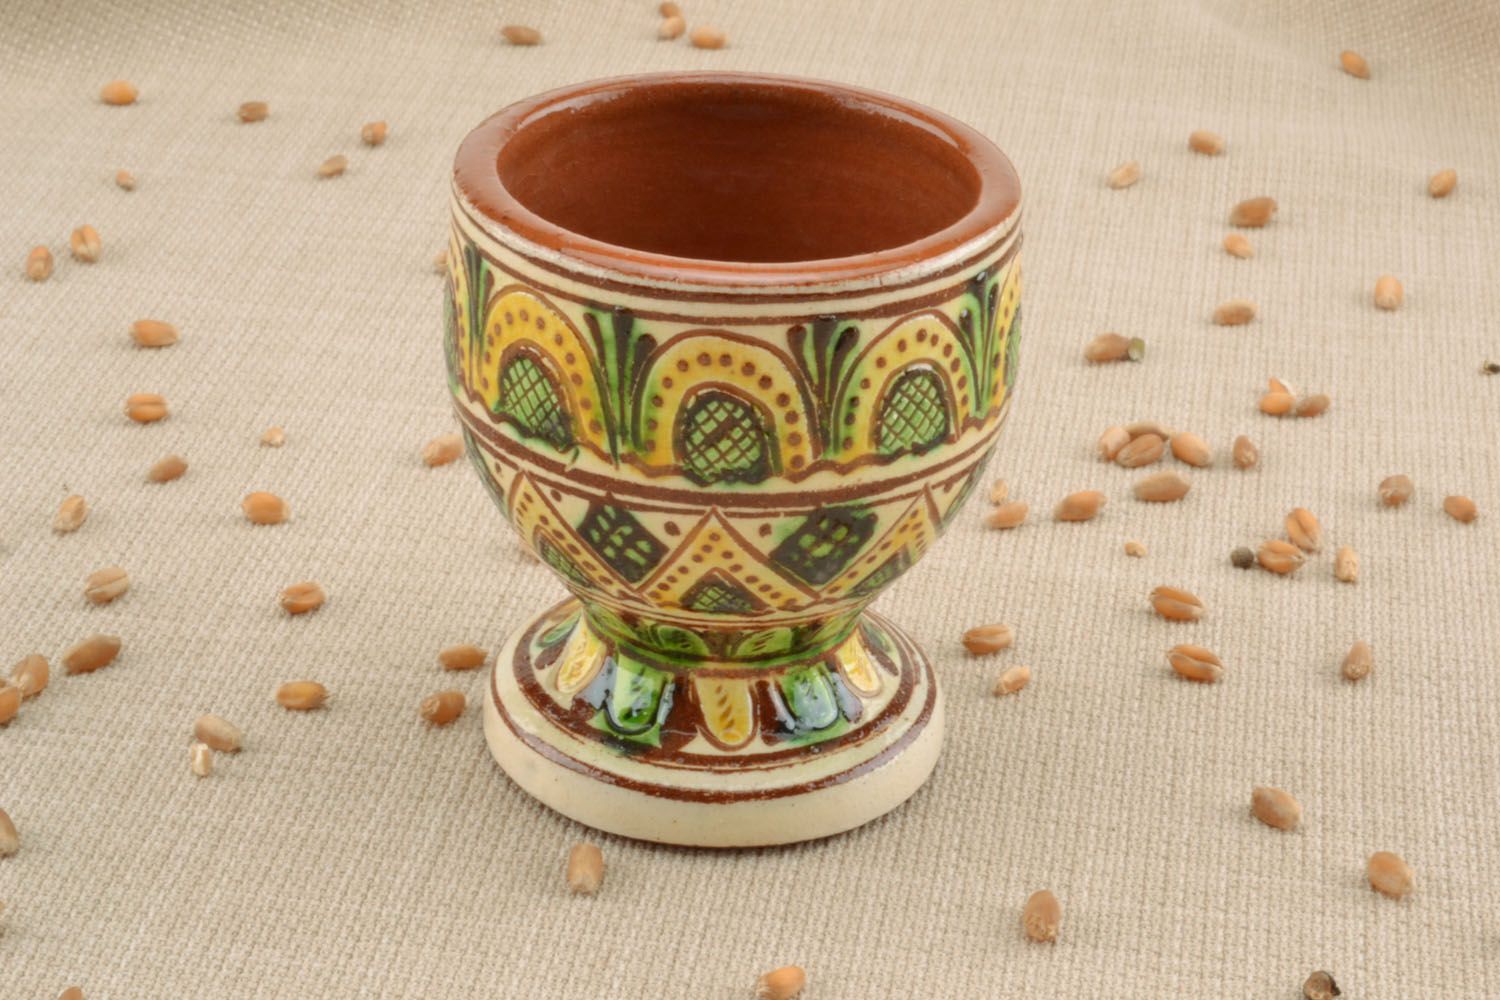 Small glass made using Ukrainian folk ceramic technique photo 1